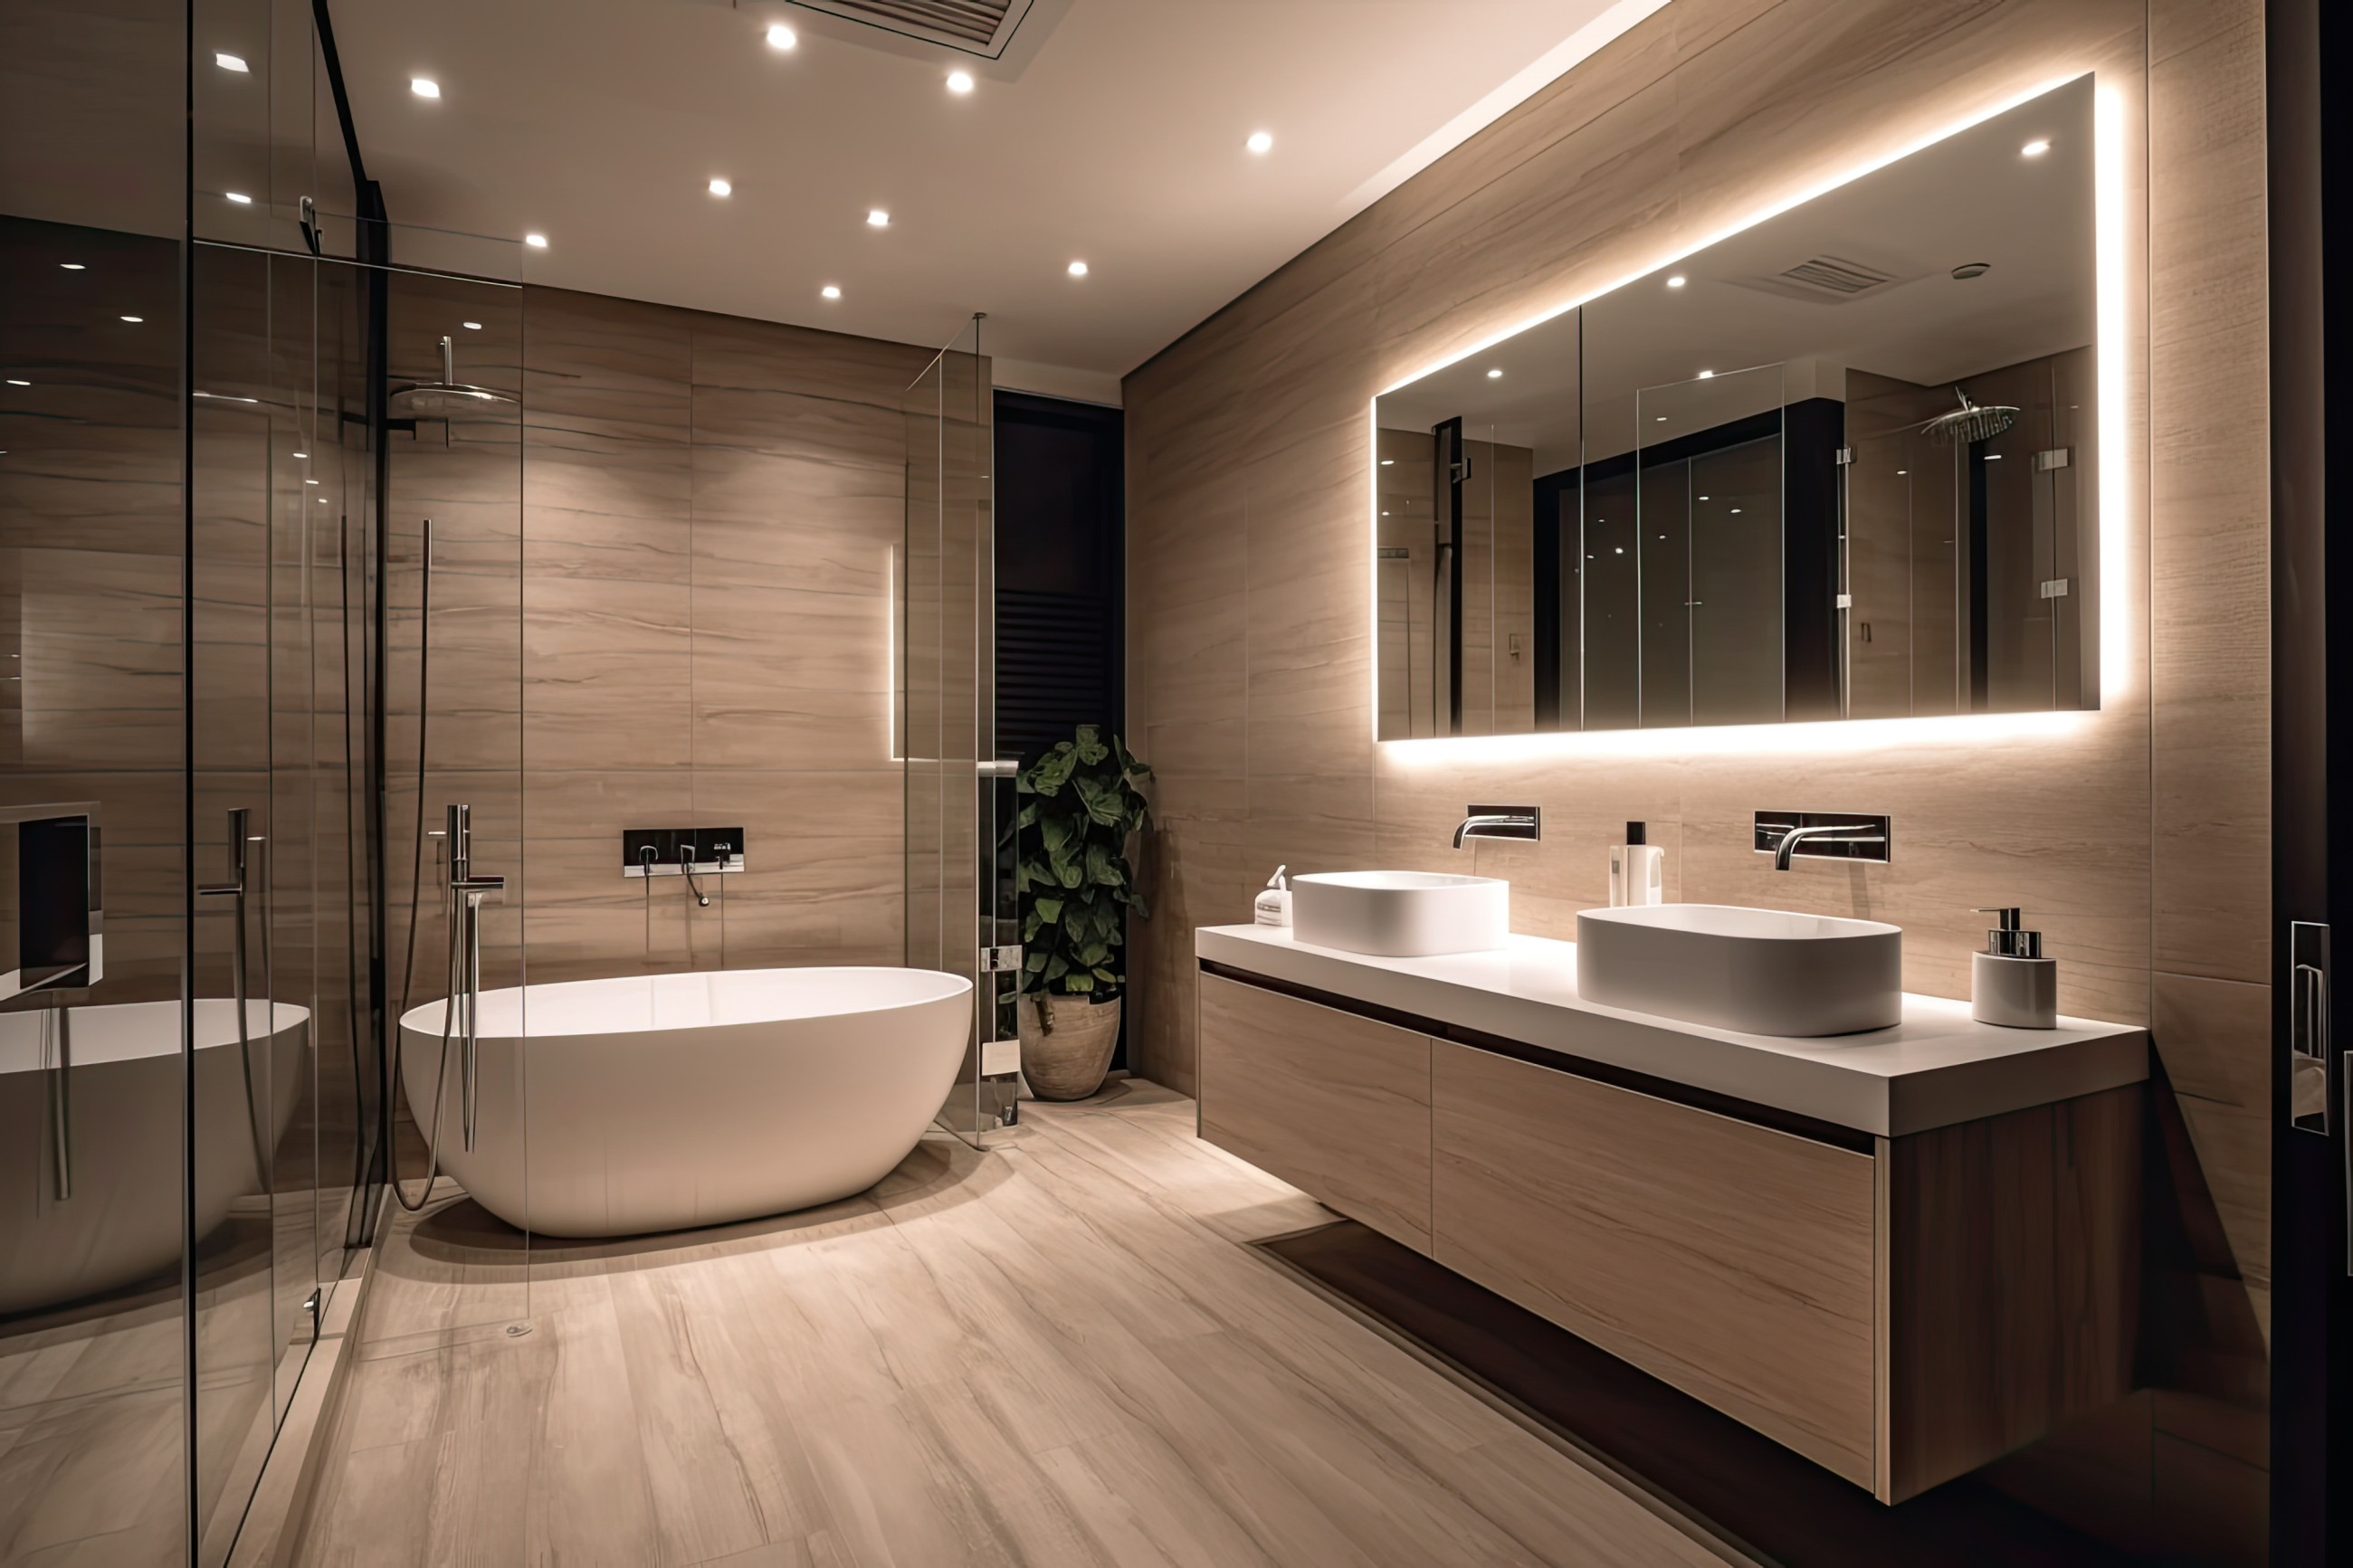 Elegant, modern bathroom mirror with back lighting, bathtub and basin